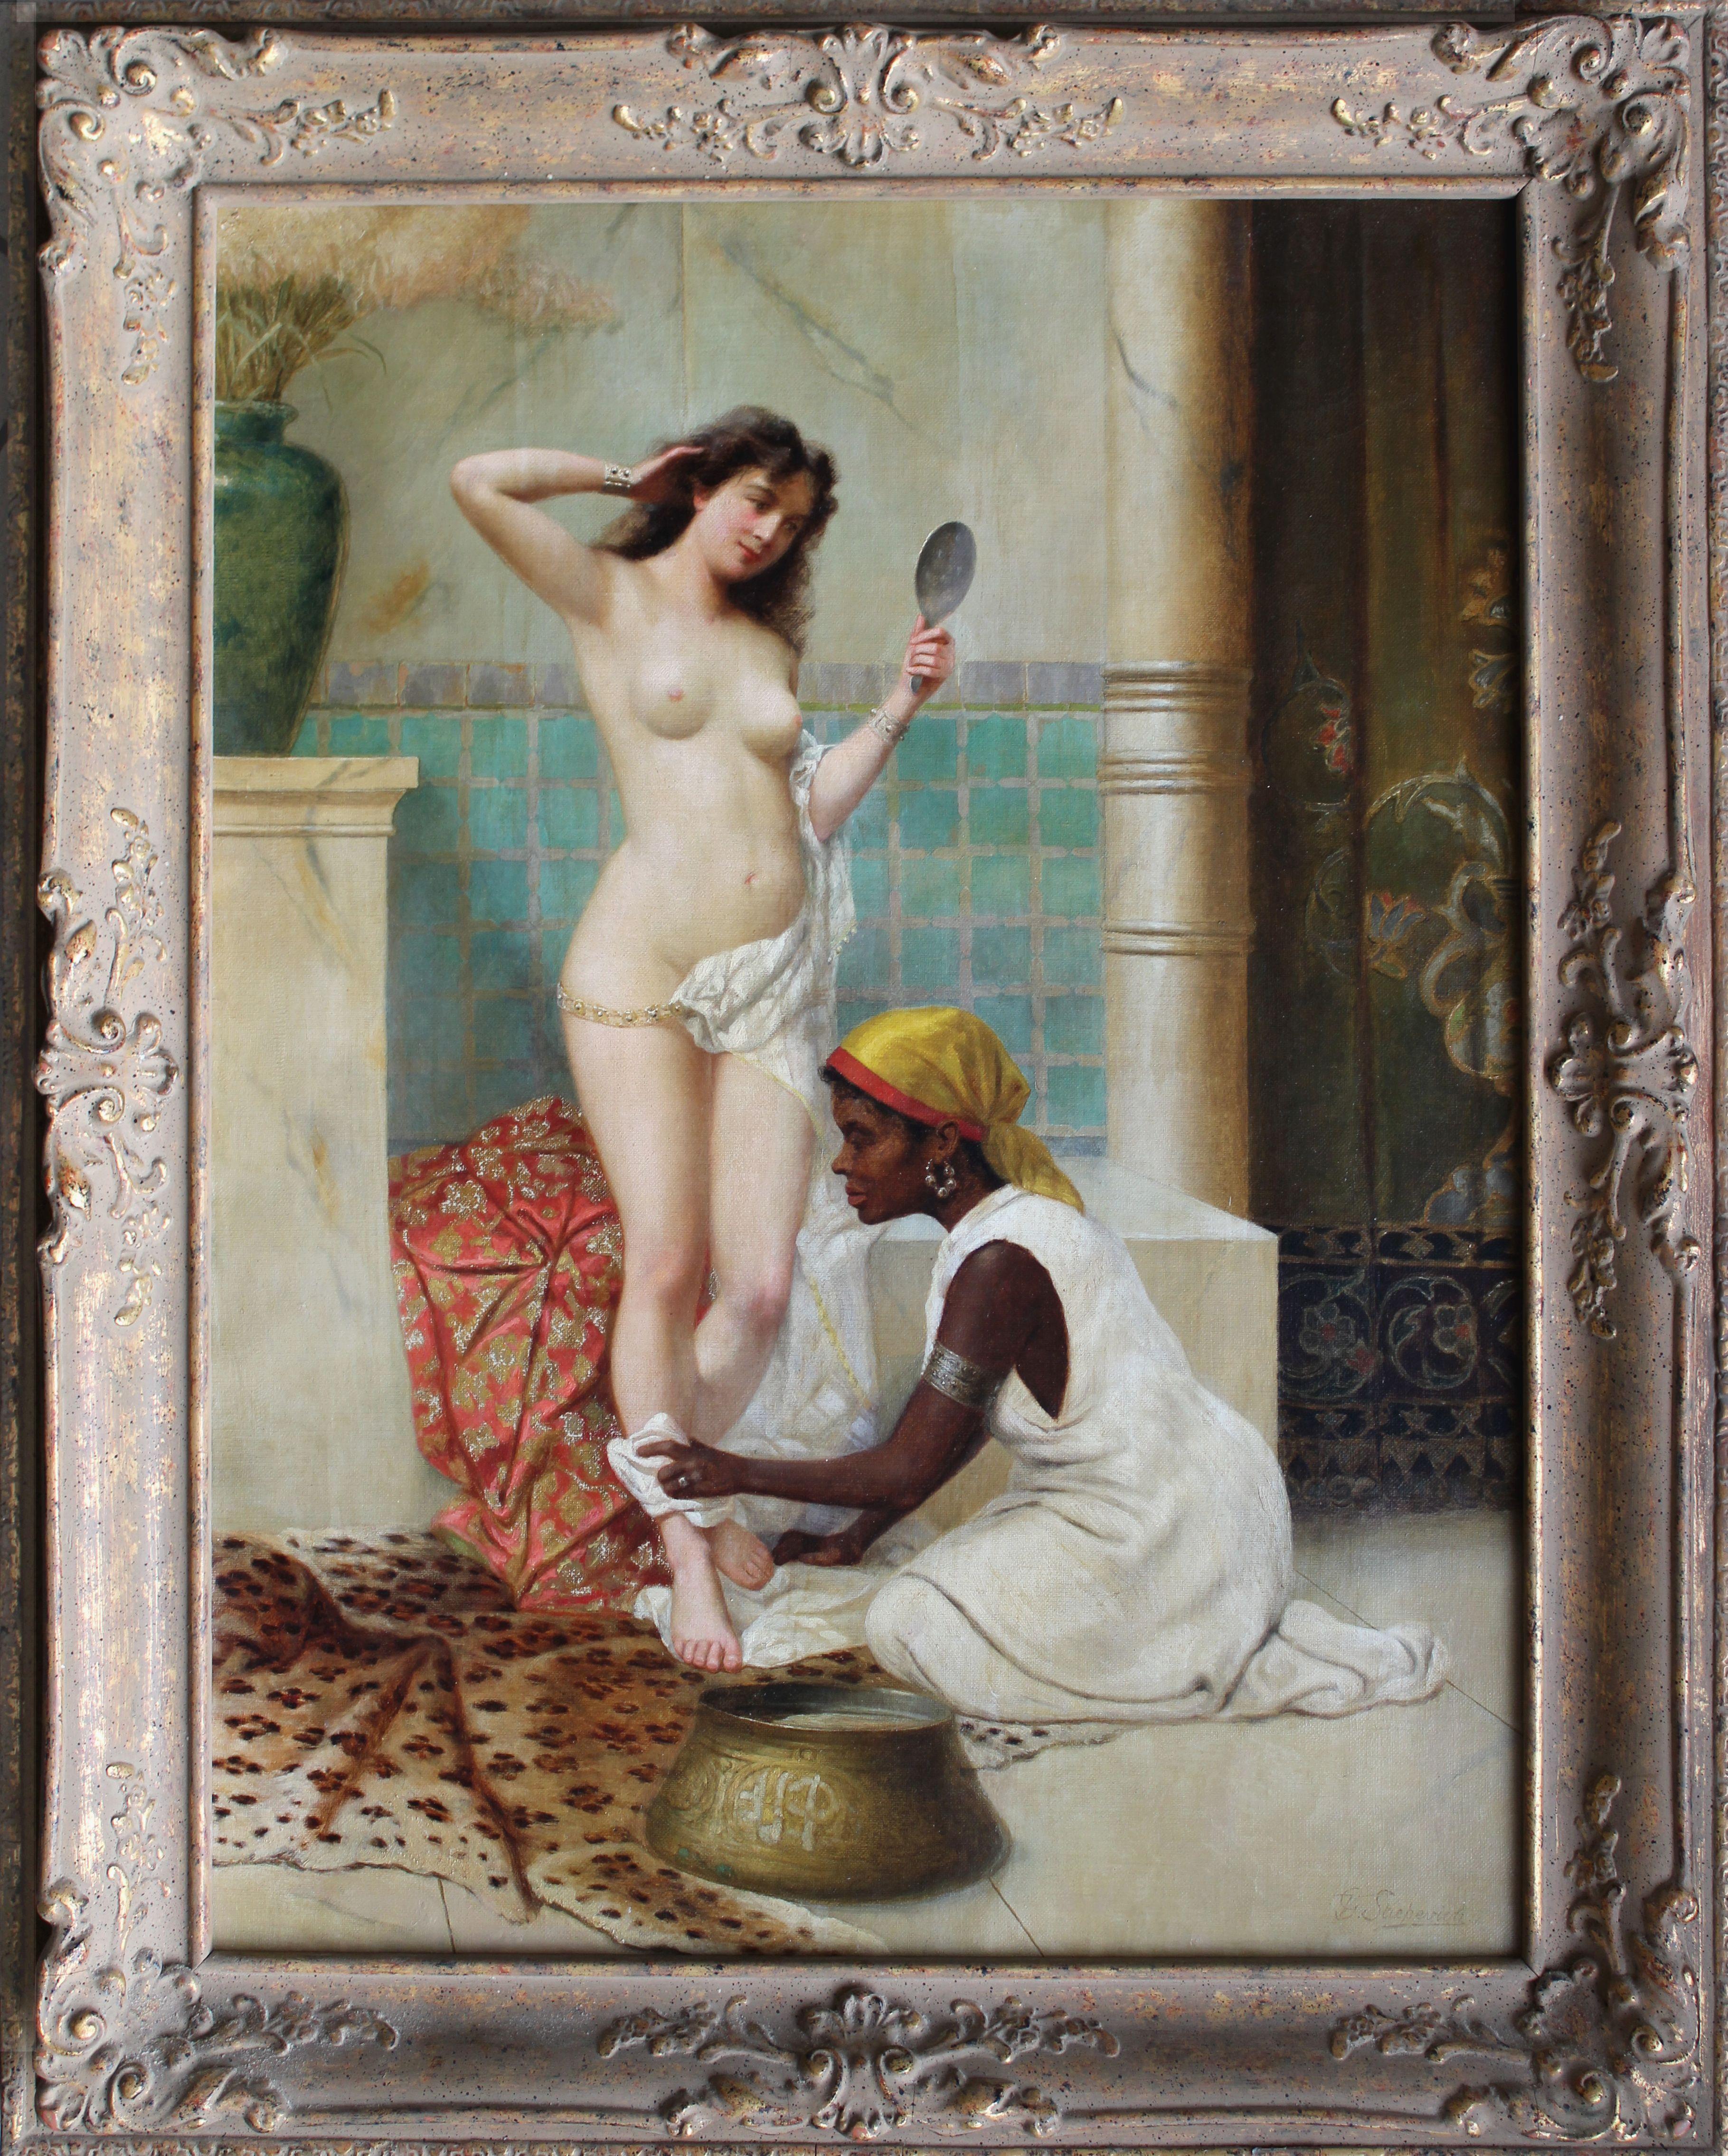 Das Bad. Das späte 19. Jahrhundert. Öl auf Leinwand, 61x46 сm – Painting von Vinsent G. Stiepevich